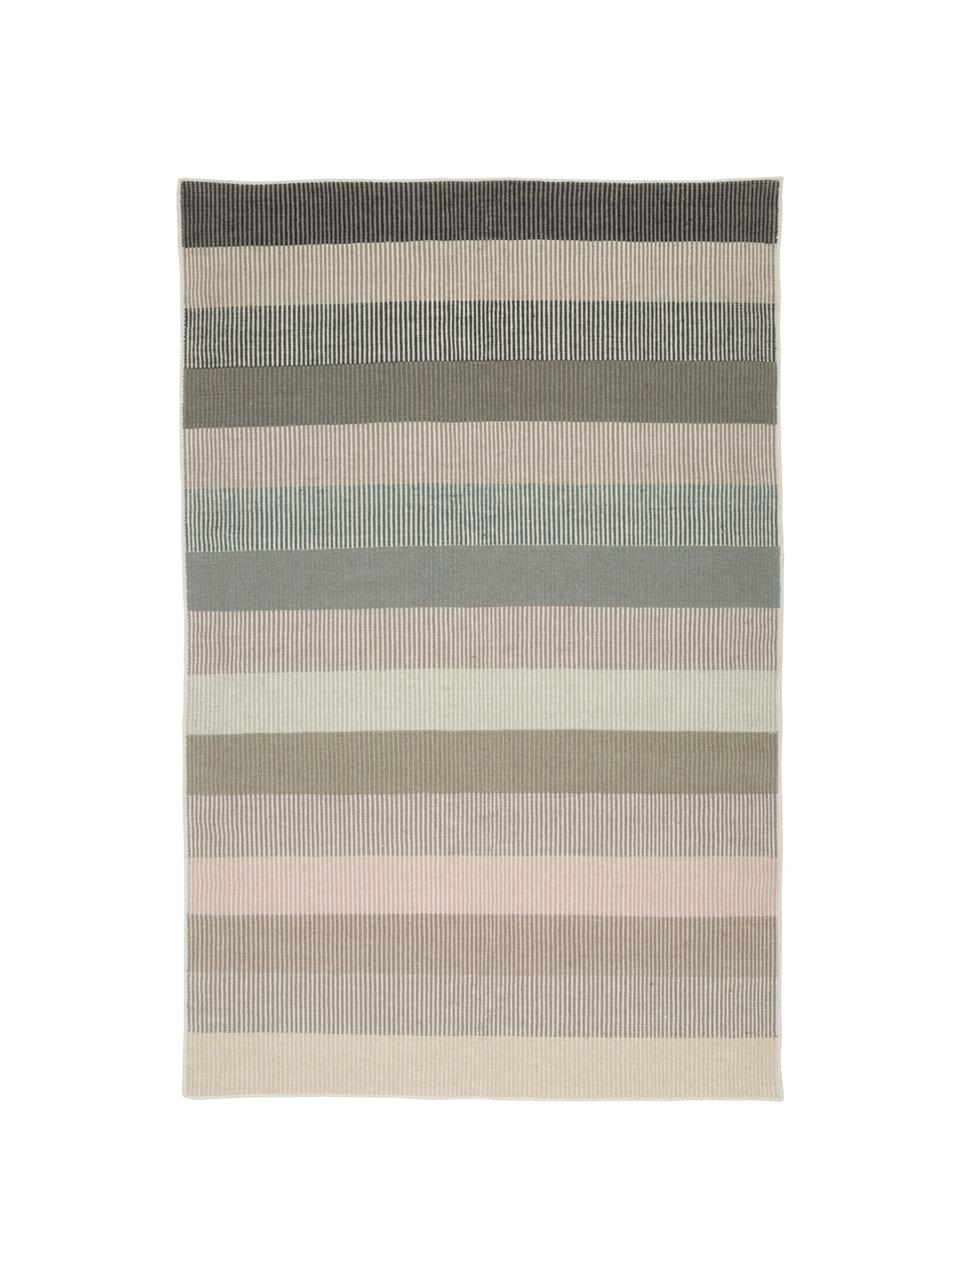 Alfombra artesanal de lana Devise, 100% lana
Las alfombras de lana se pueden aflojar durante las primeras semanas de uso, la pelusa se reduce con el uso diario, Multicolor, An 200 x L 300 cm (Tamaño L)